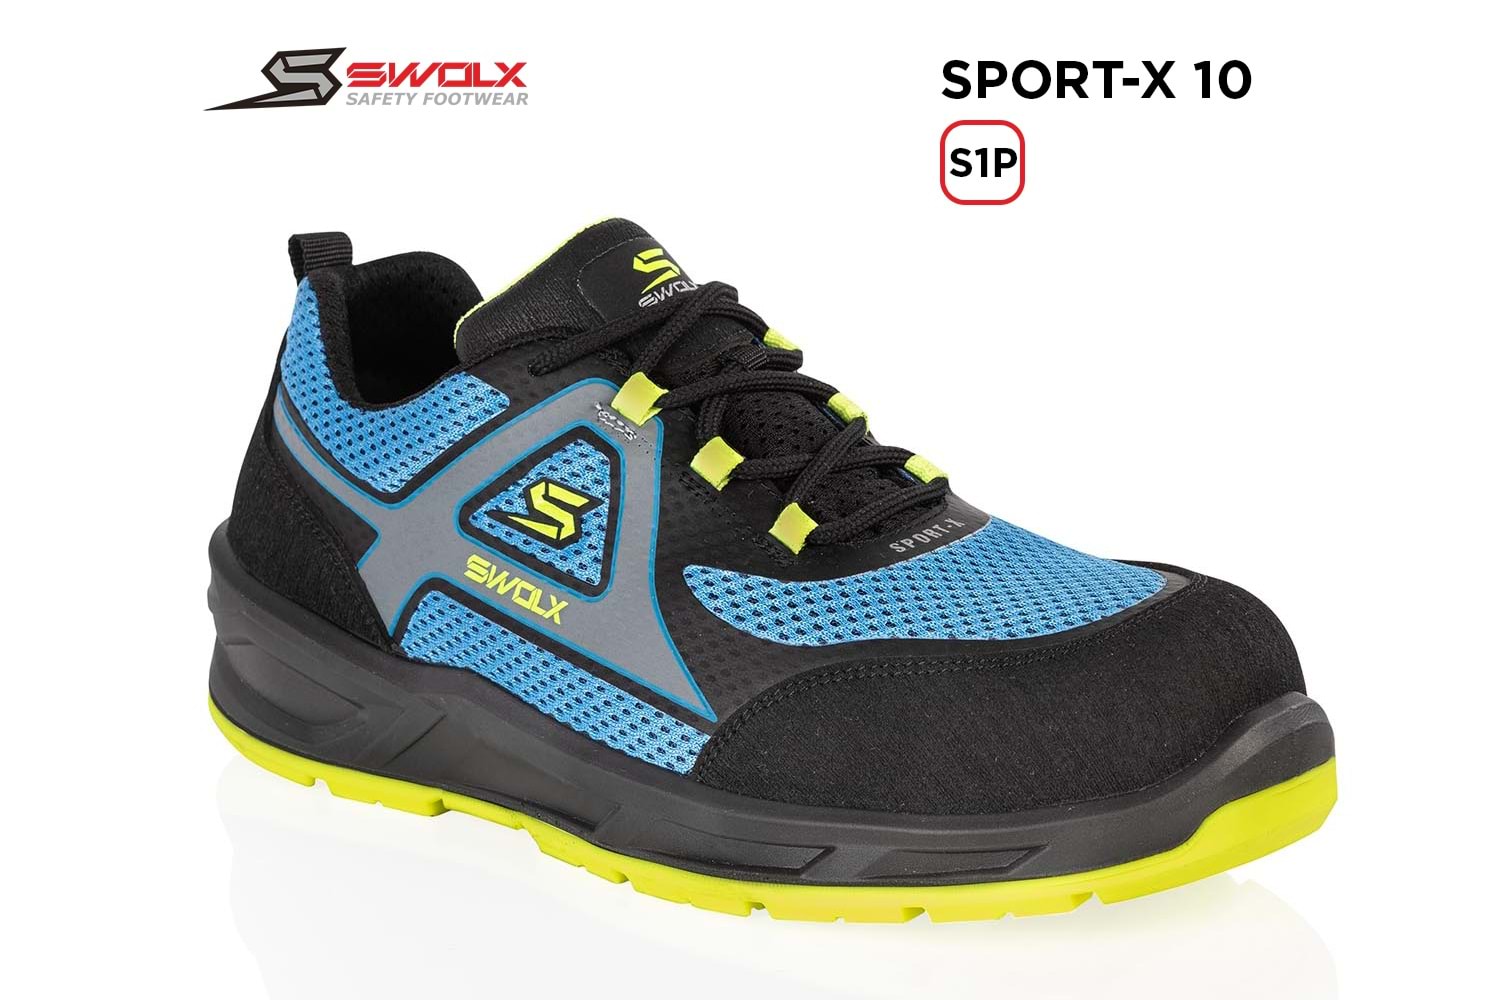 Swolx İş Ayakkabısı - Sport-X 10 S1P - 42